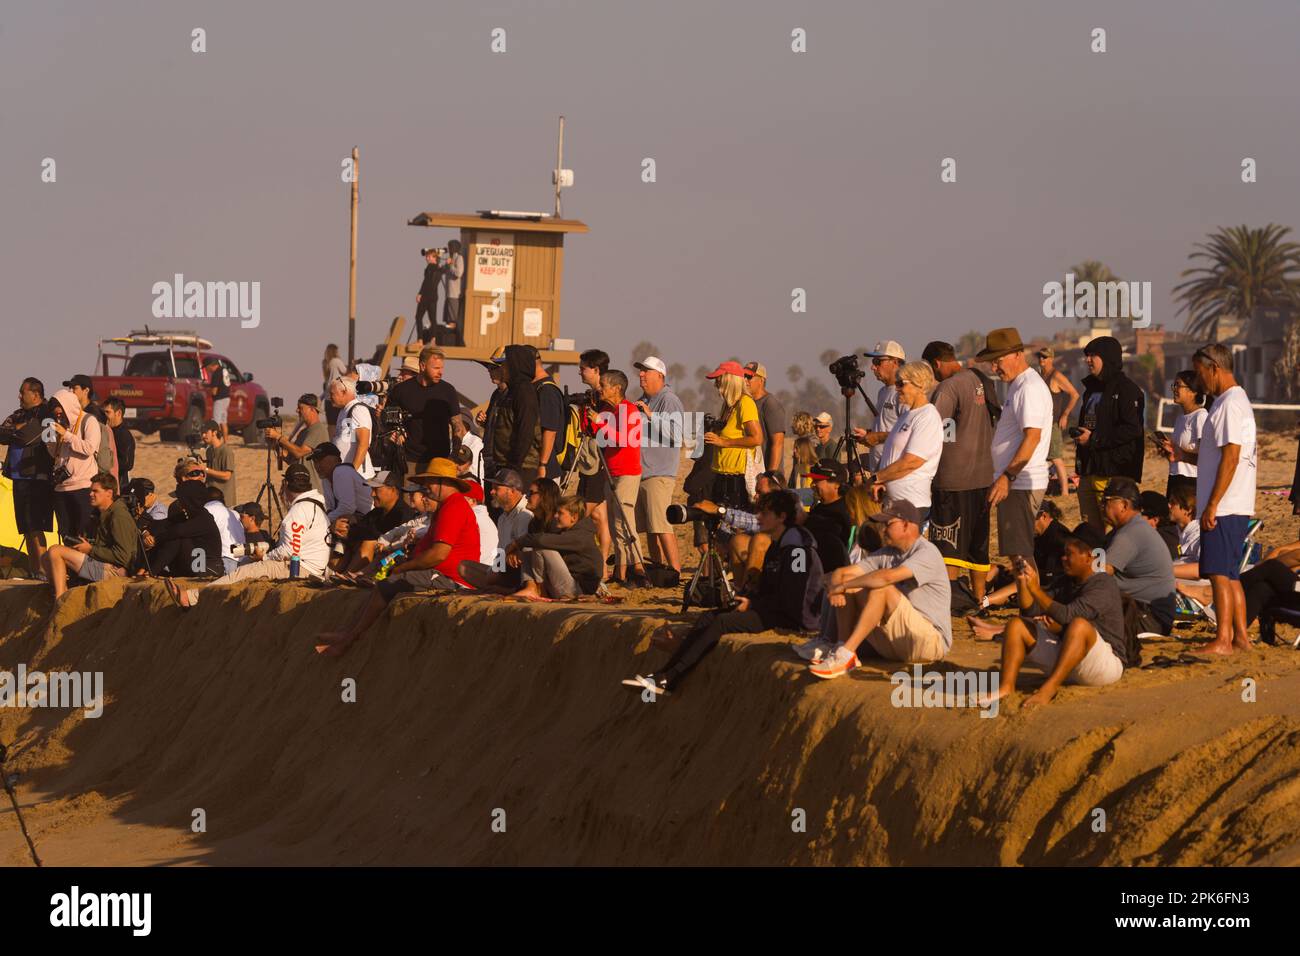 Personnes prenant des photos sur la plage, Newport Beach, Californie, États-Unis Banque D'Images